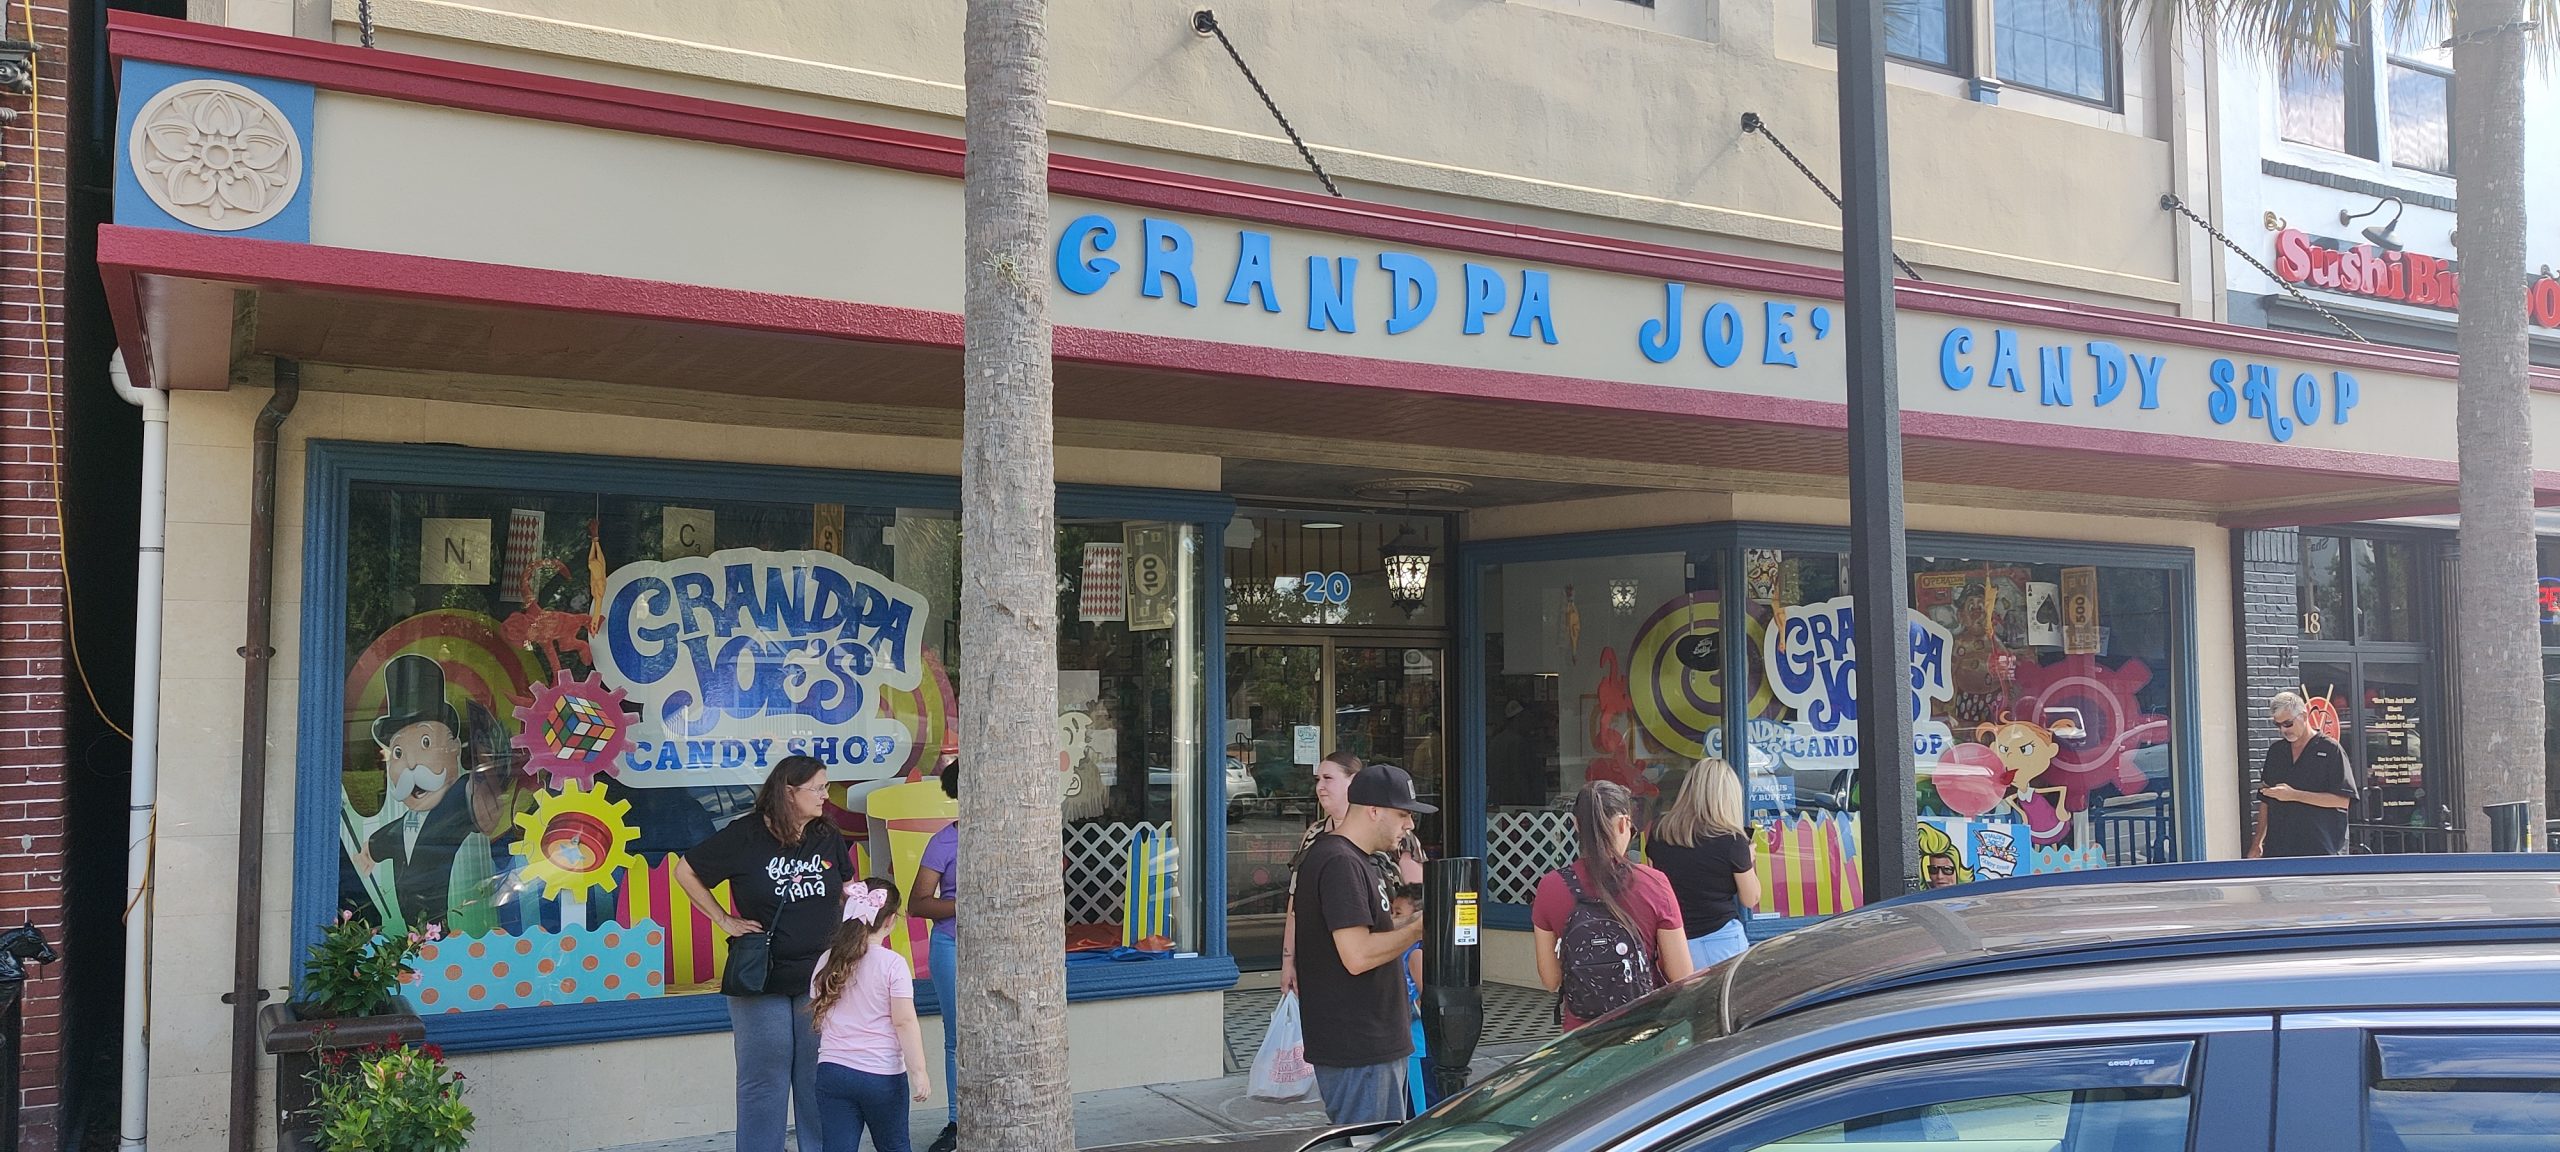 Grandpa Joe's Candy Shop (1)